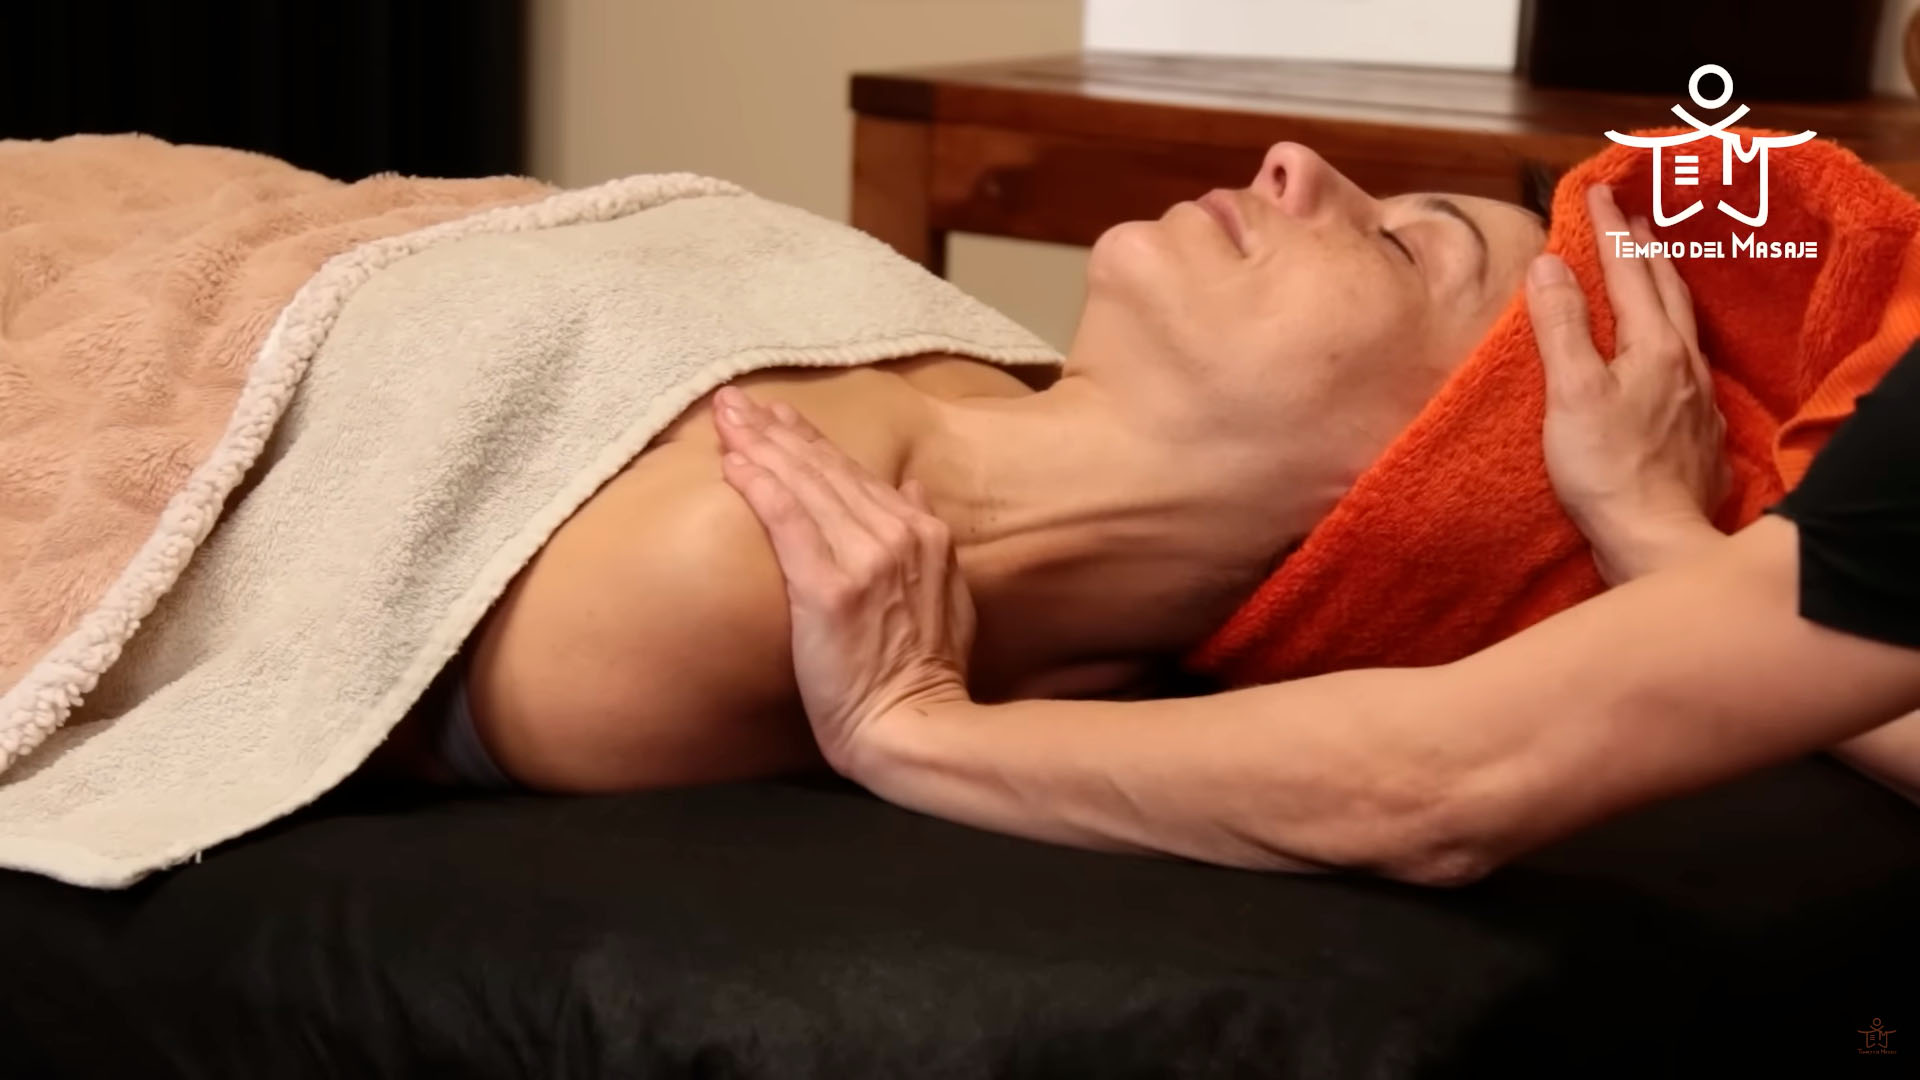 Técnicas de estiramiento del cuello con una toalla